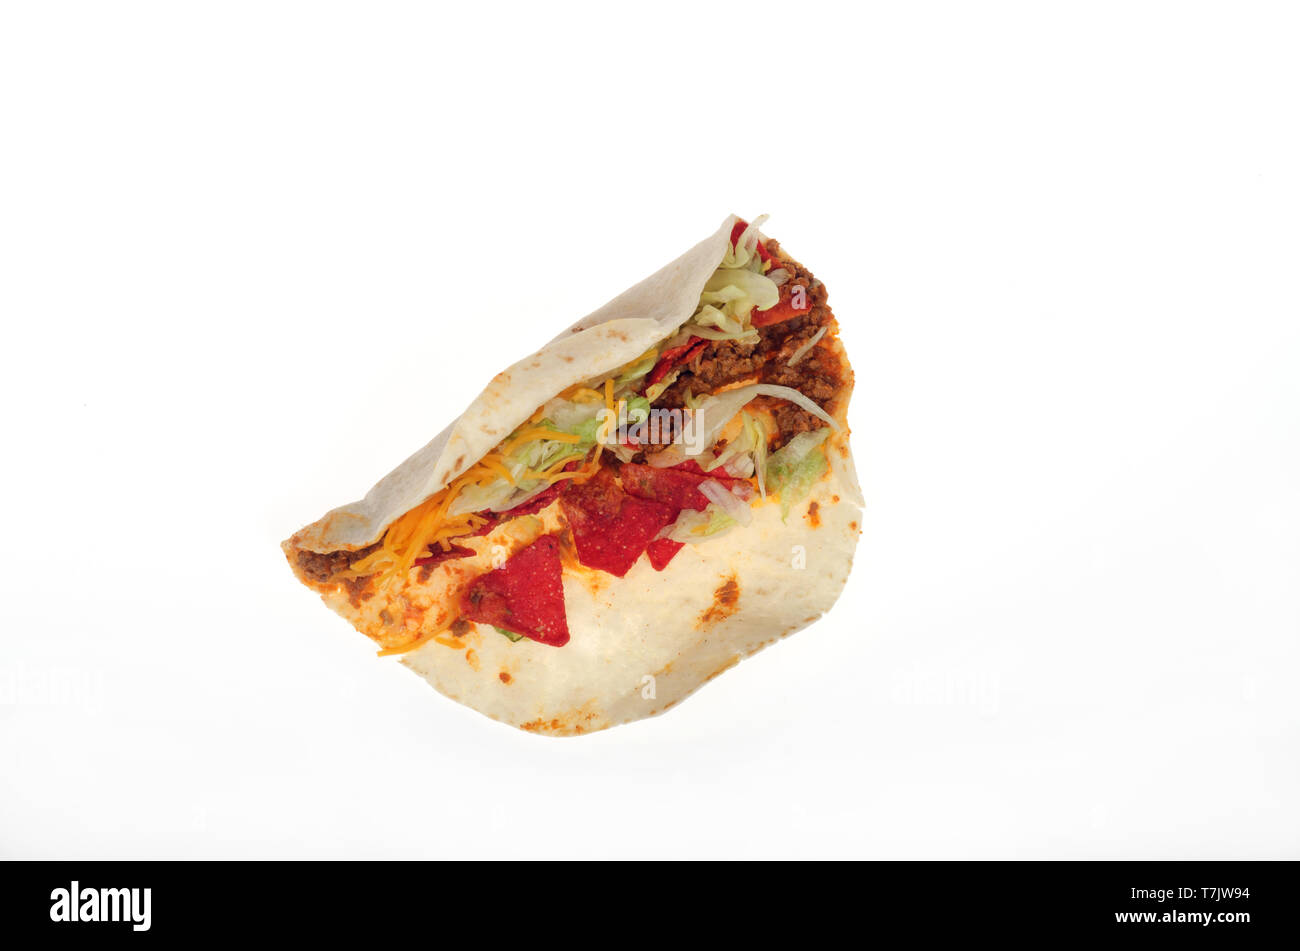 Taco Bell morbida caricata piccante nacho taco da sopra Foto Stock